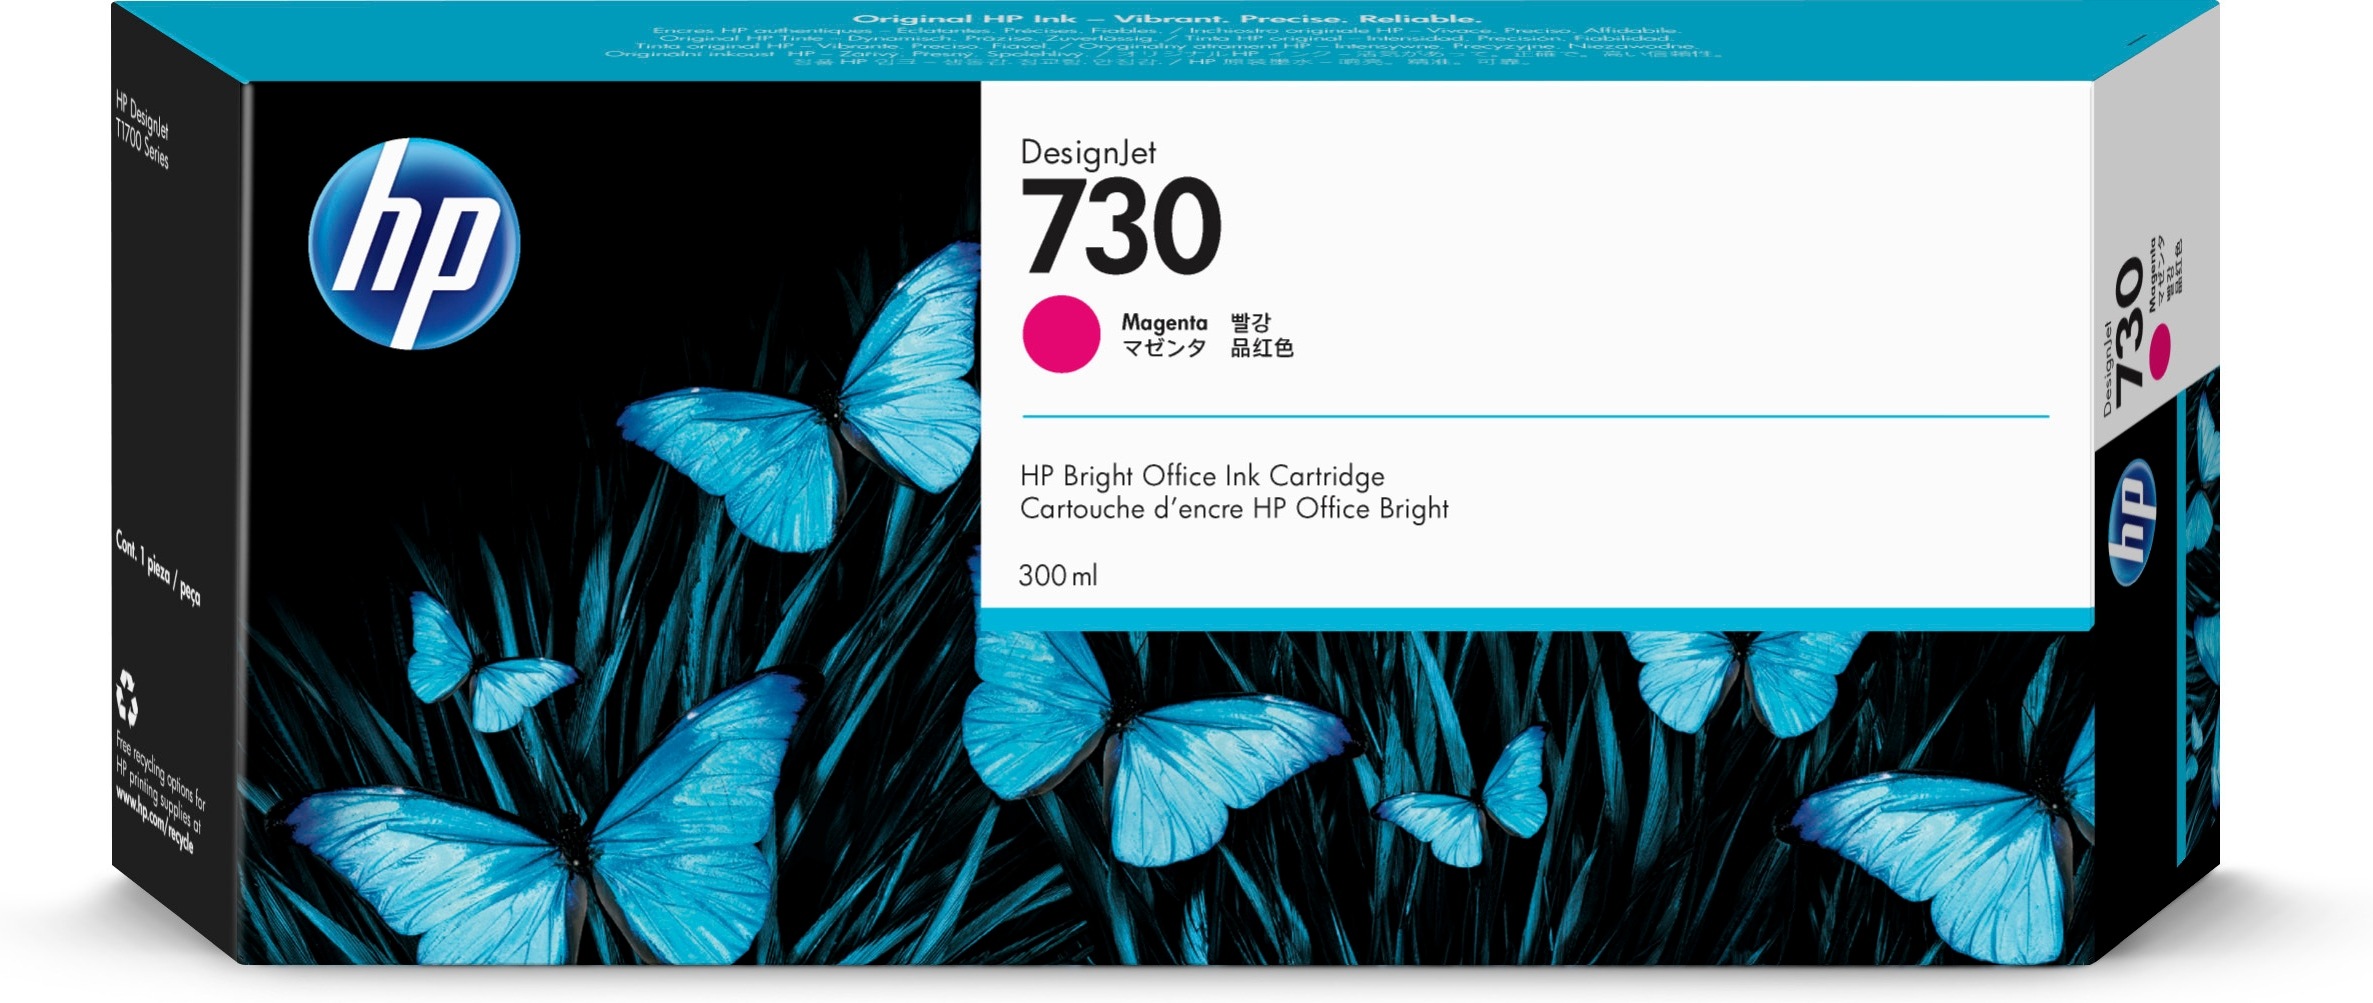 HP 730 magenta DesignJet inktcartridge, 300 ml single pack / magenta